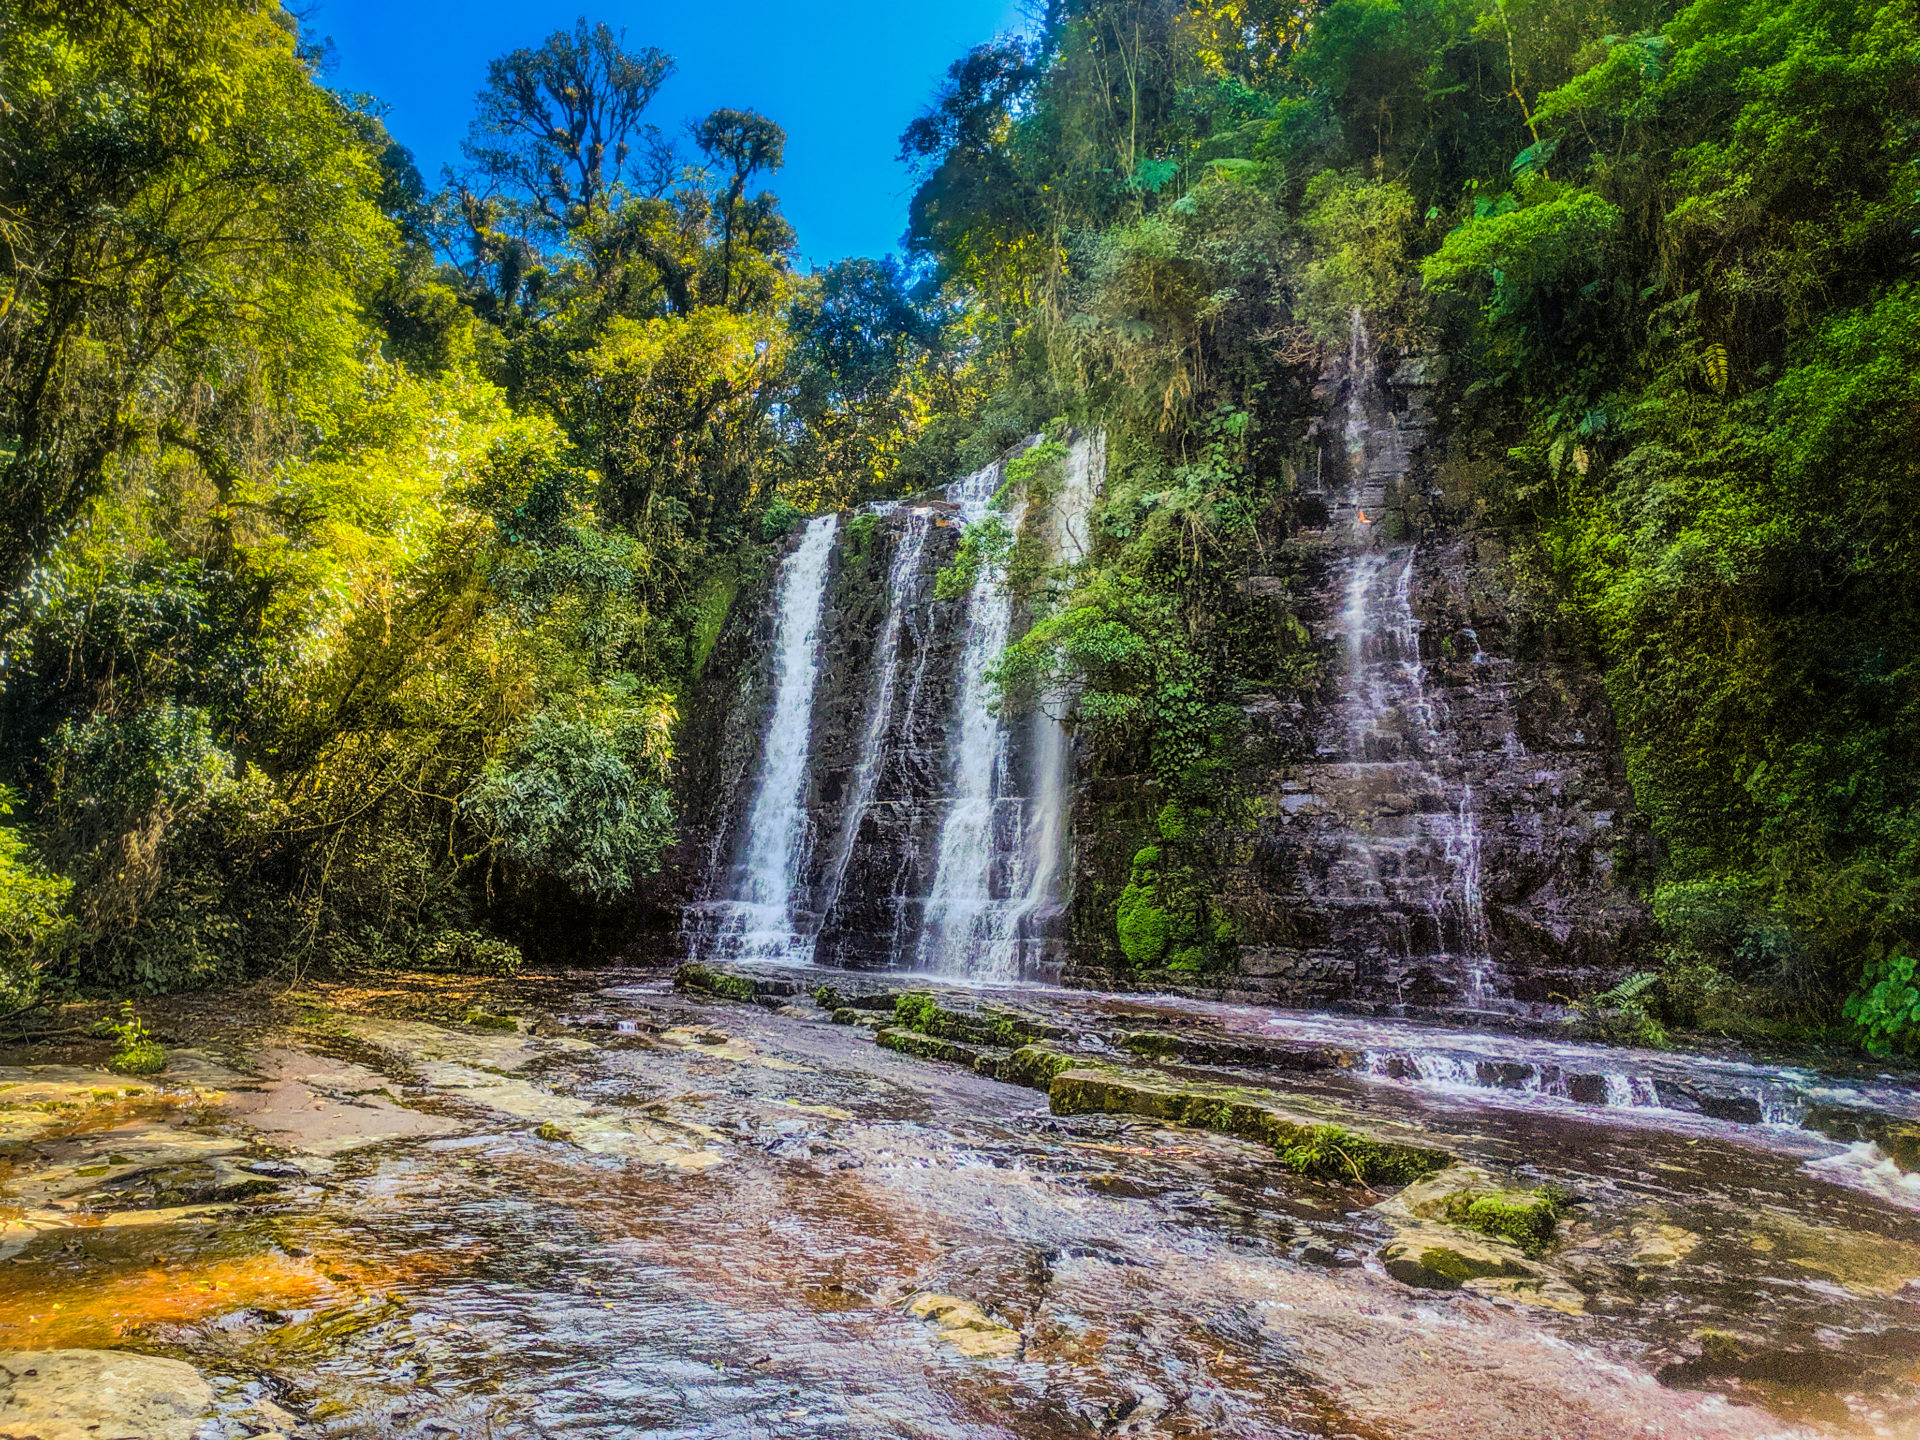 Cachoeiras perto de Curitiba para visitar | Cachoeira dos Ciganos | Conexão123